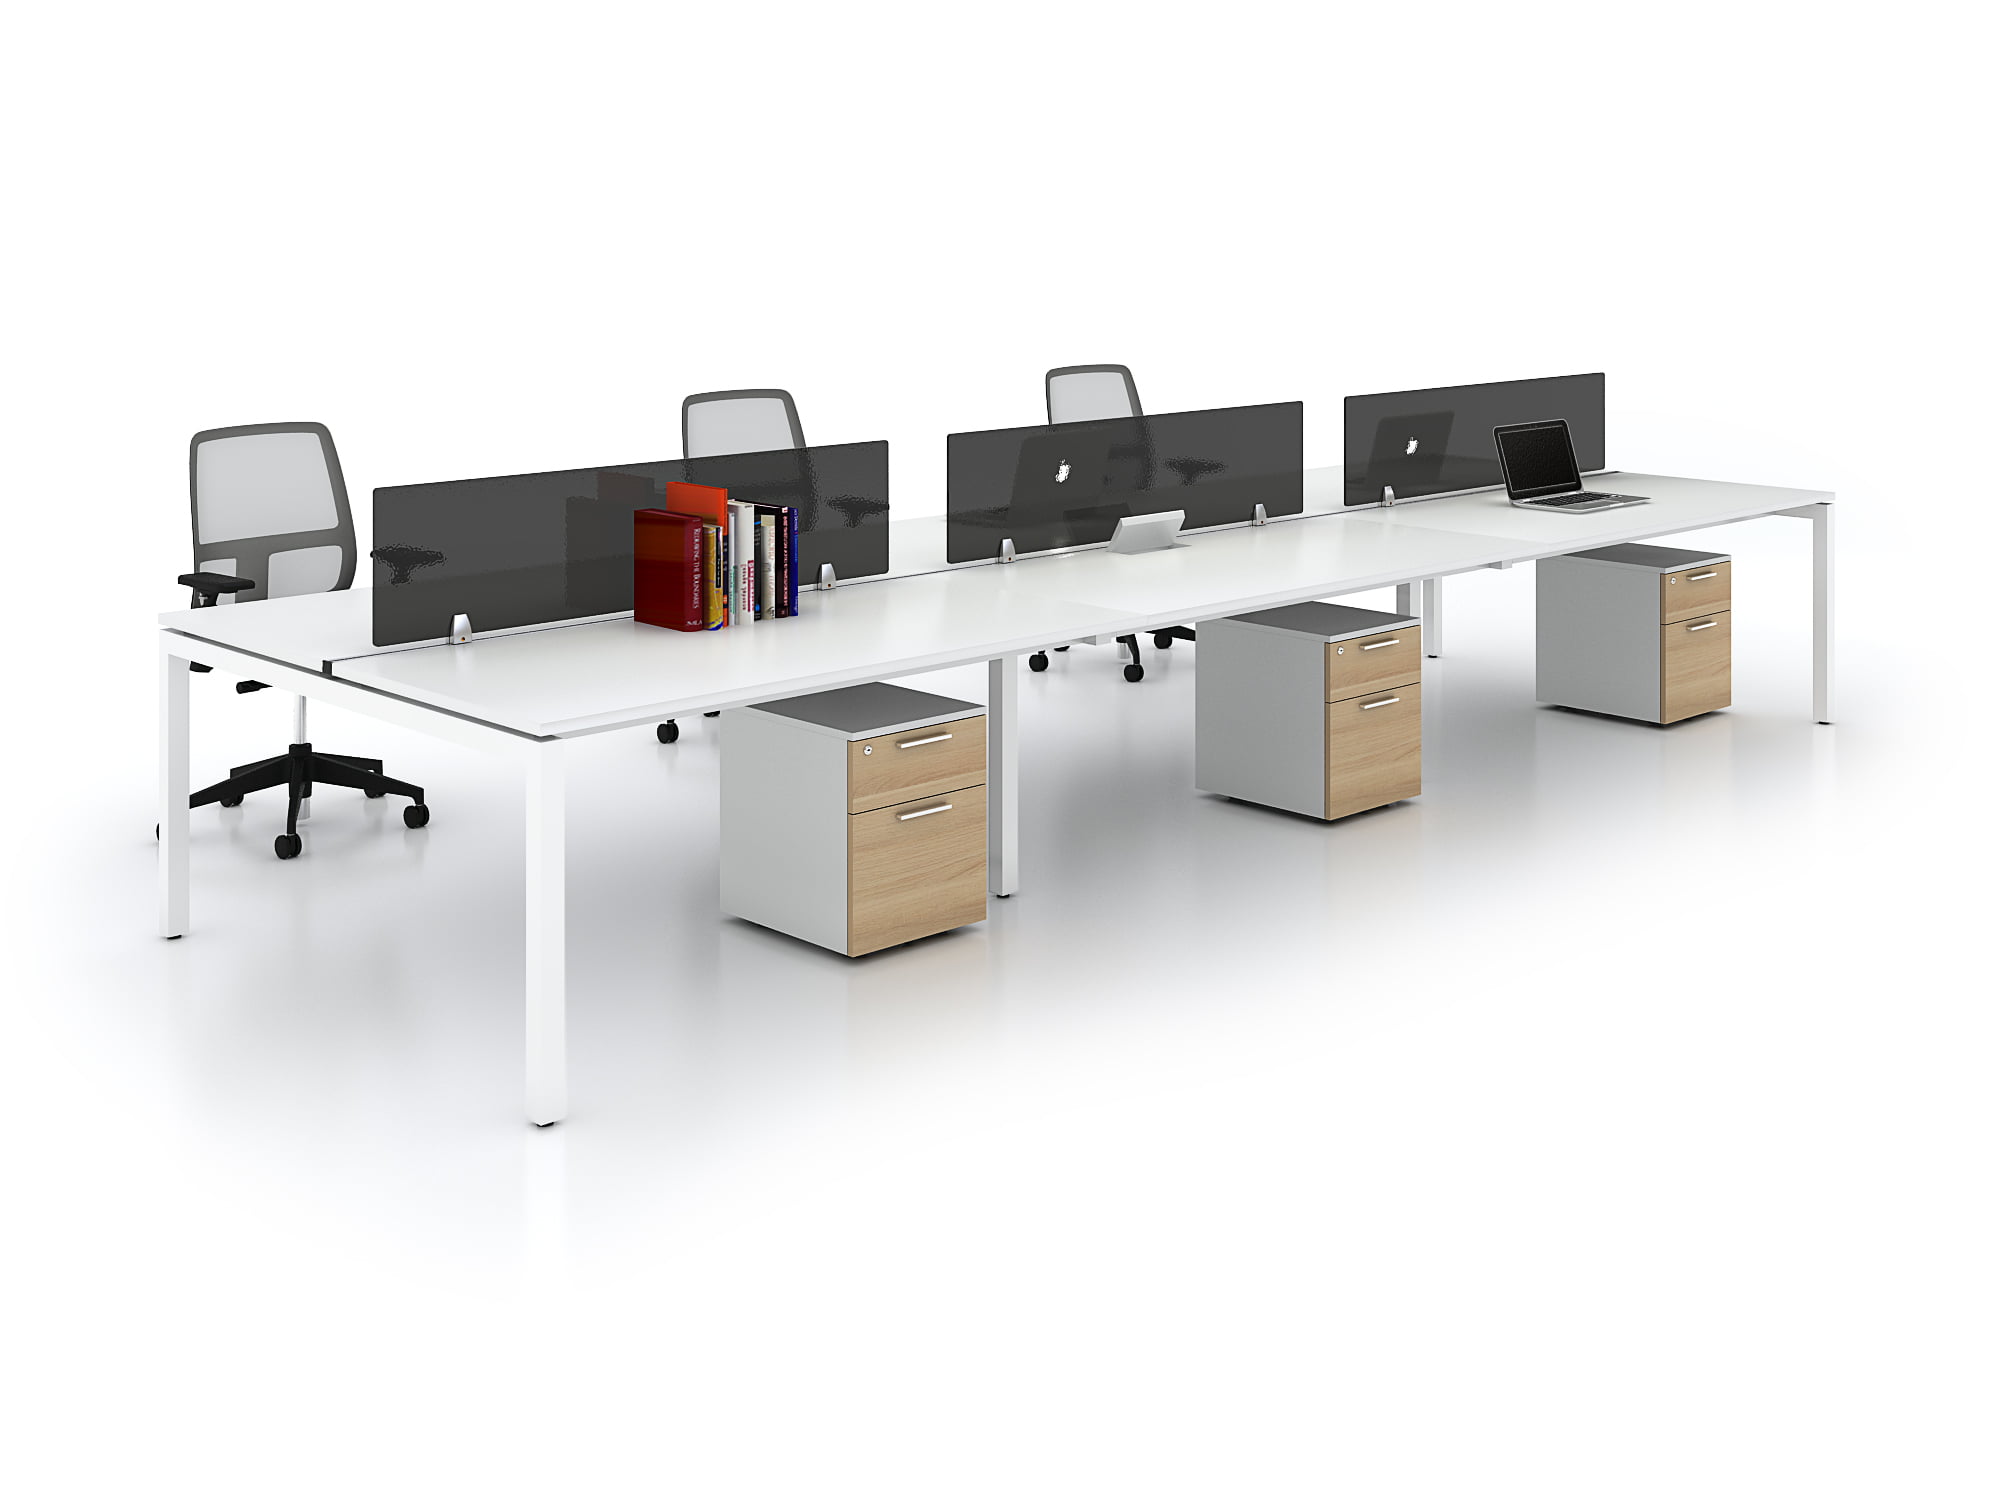 Các mẫu cụm bàn làm việc 6 người hiện đại phù hợp với mọi văn phòng